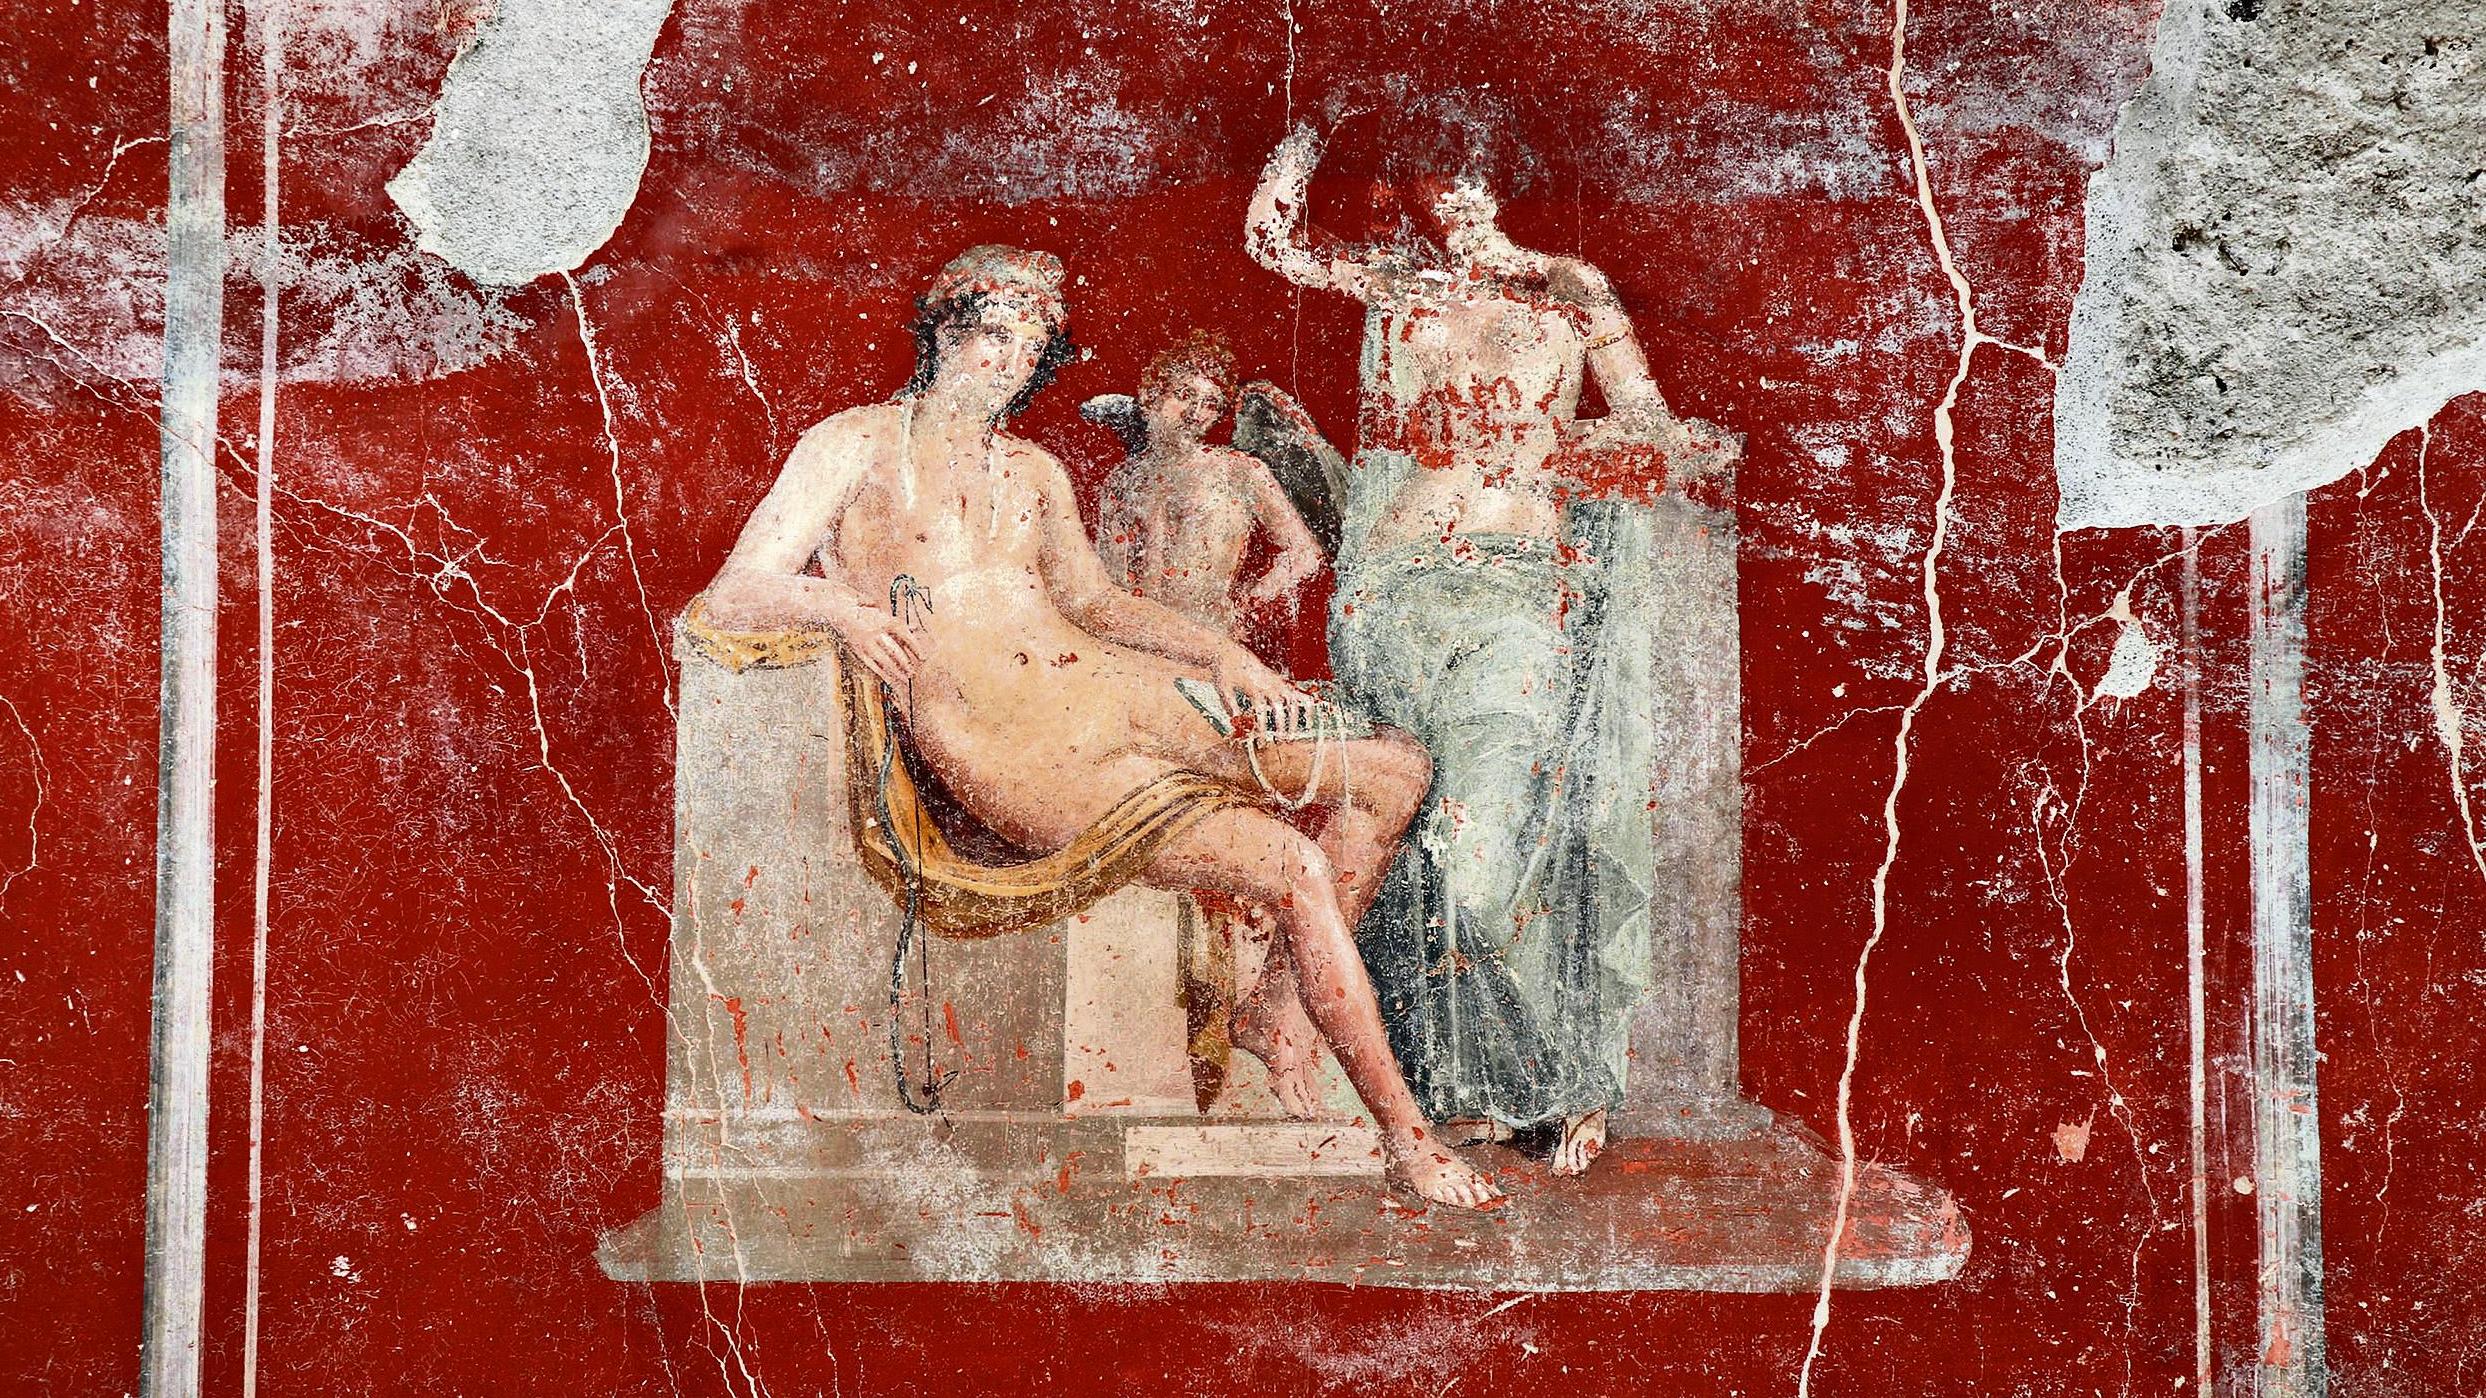 Pompeii'S Erotic Art